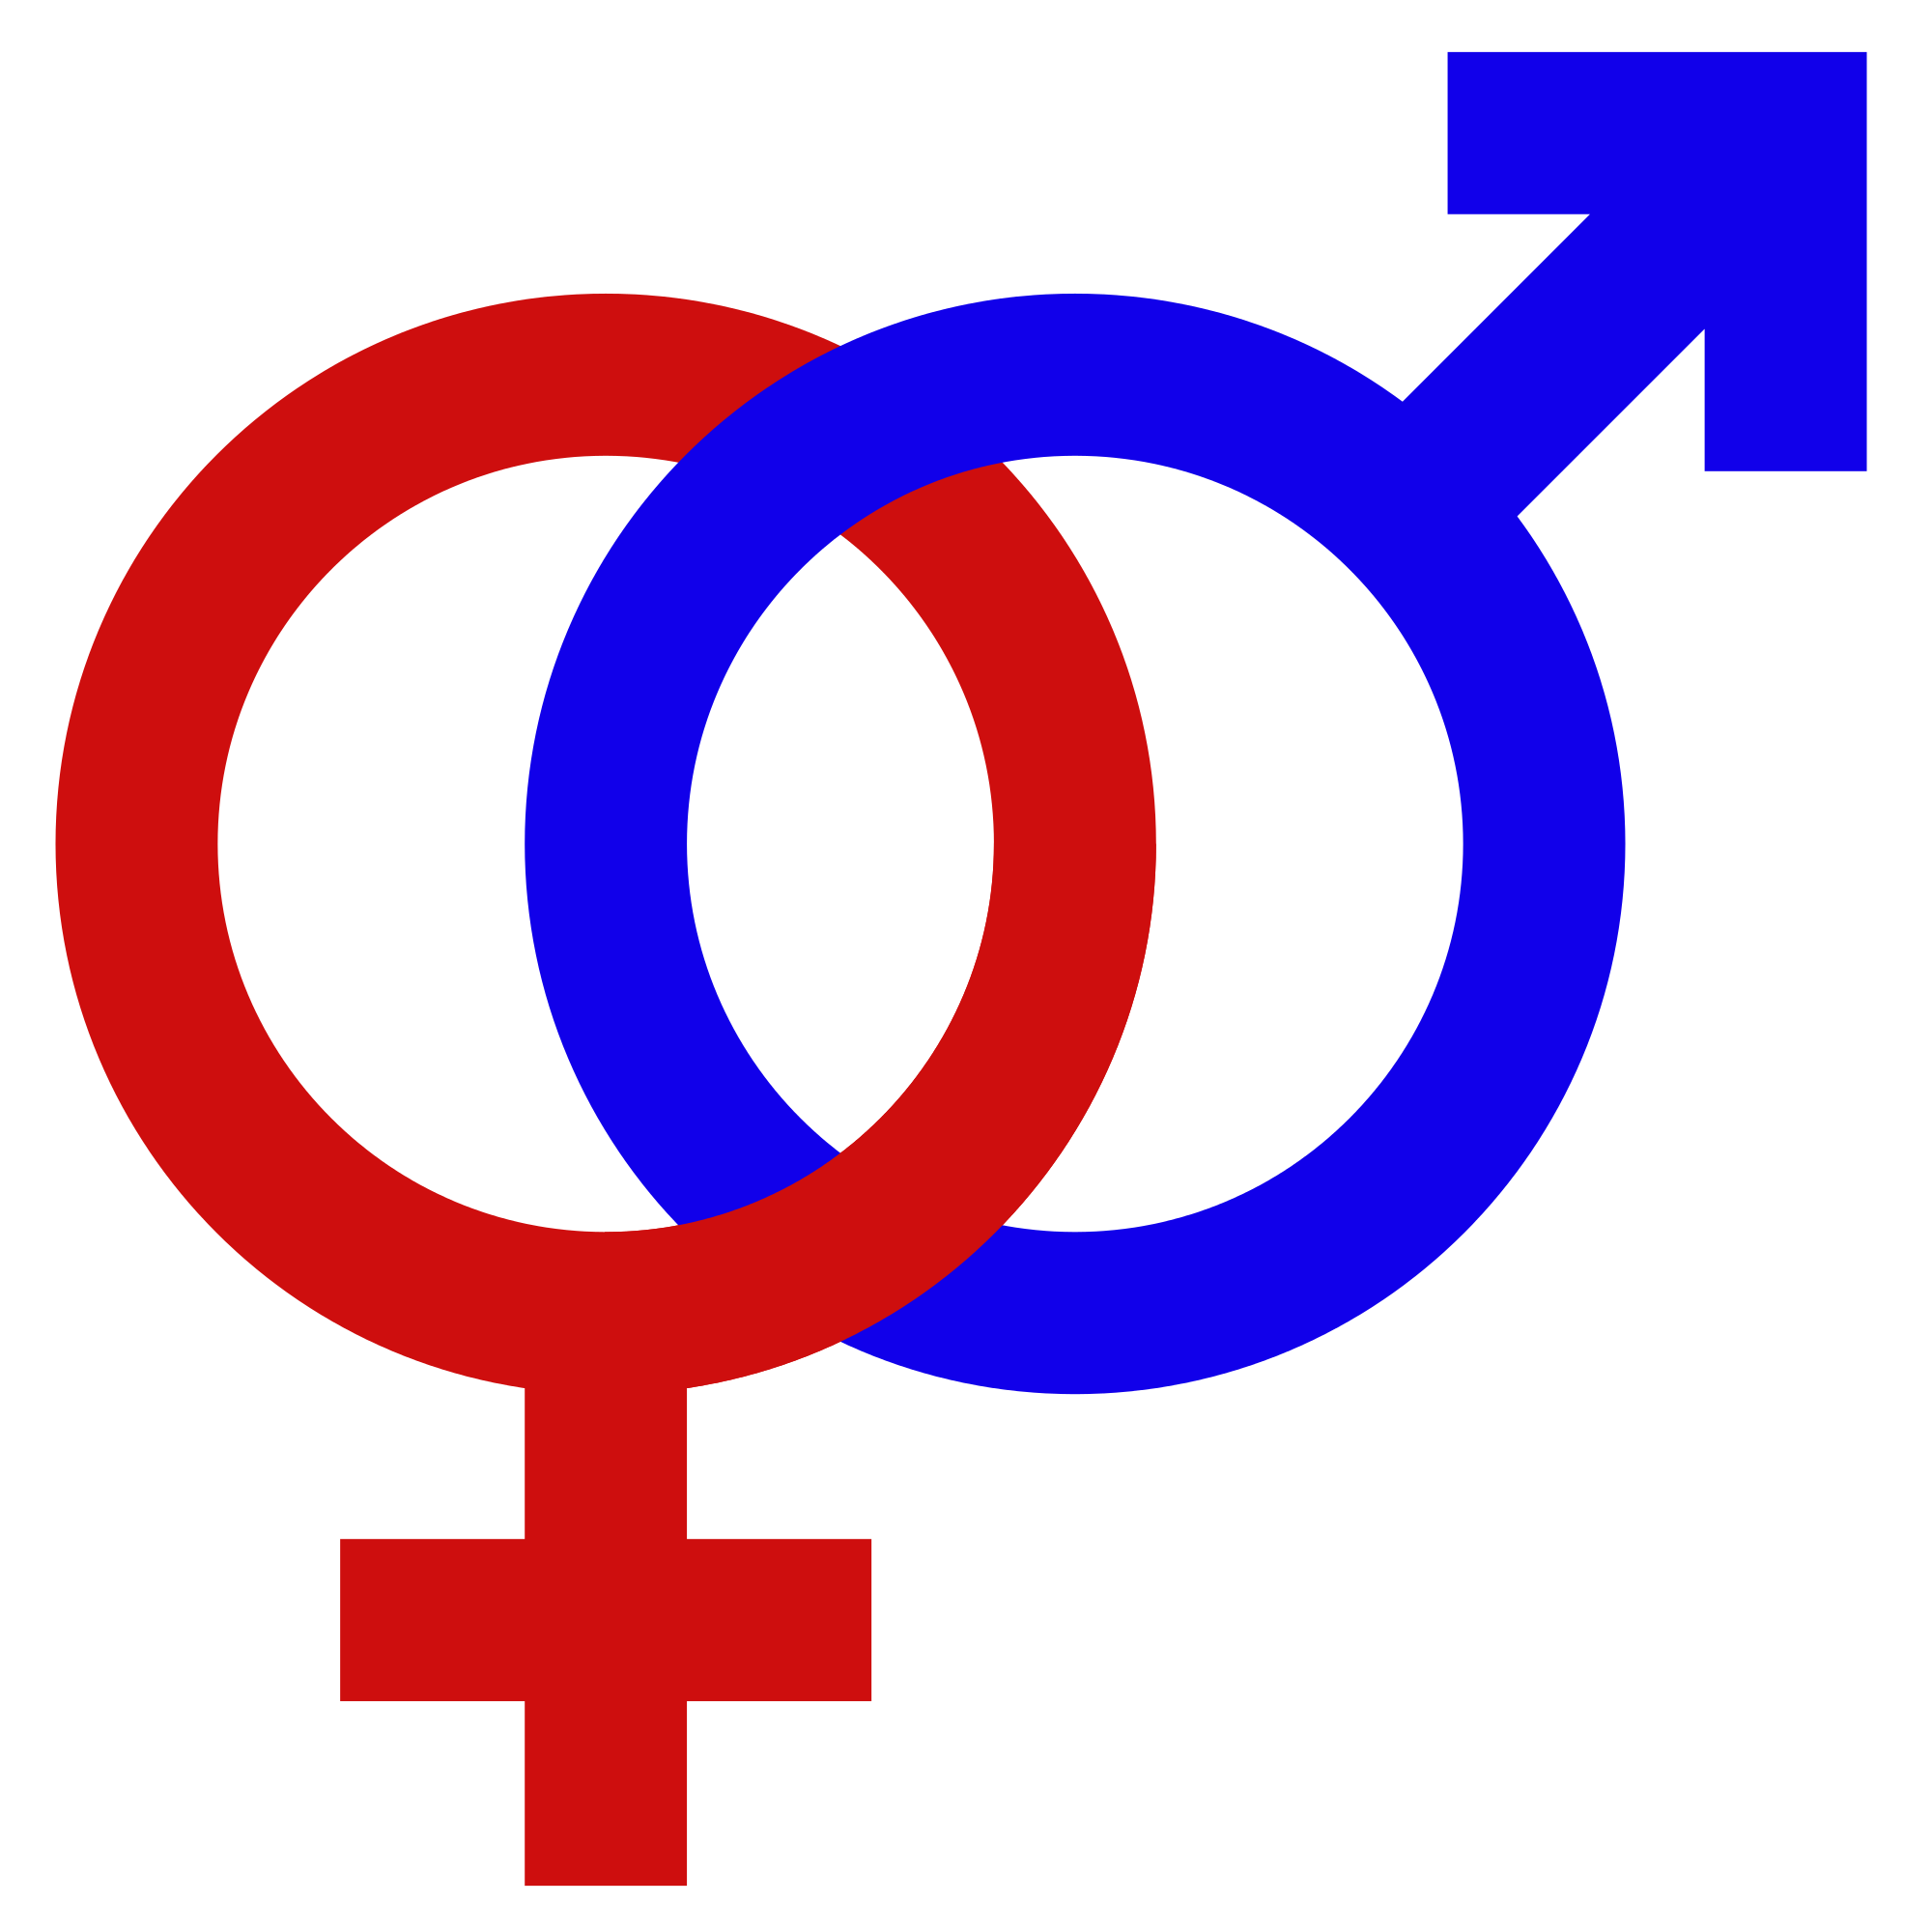 File:Gender signs.png